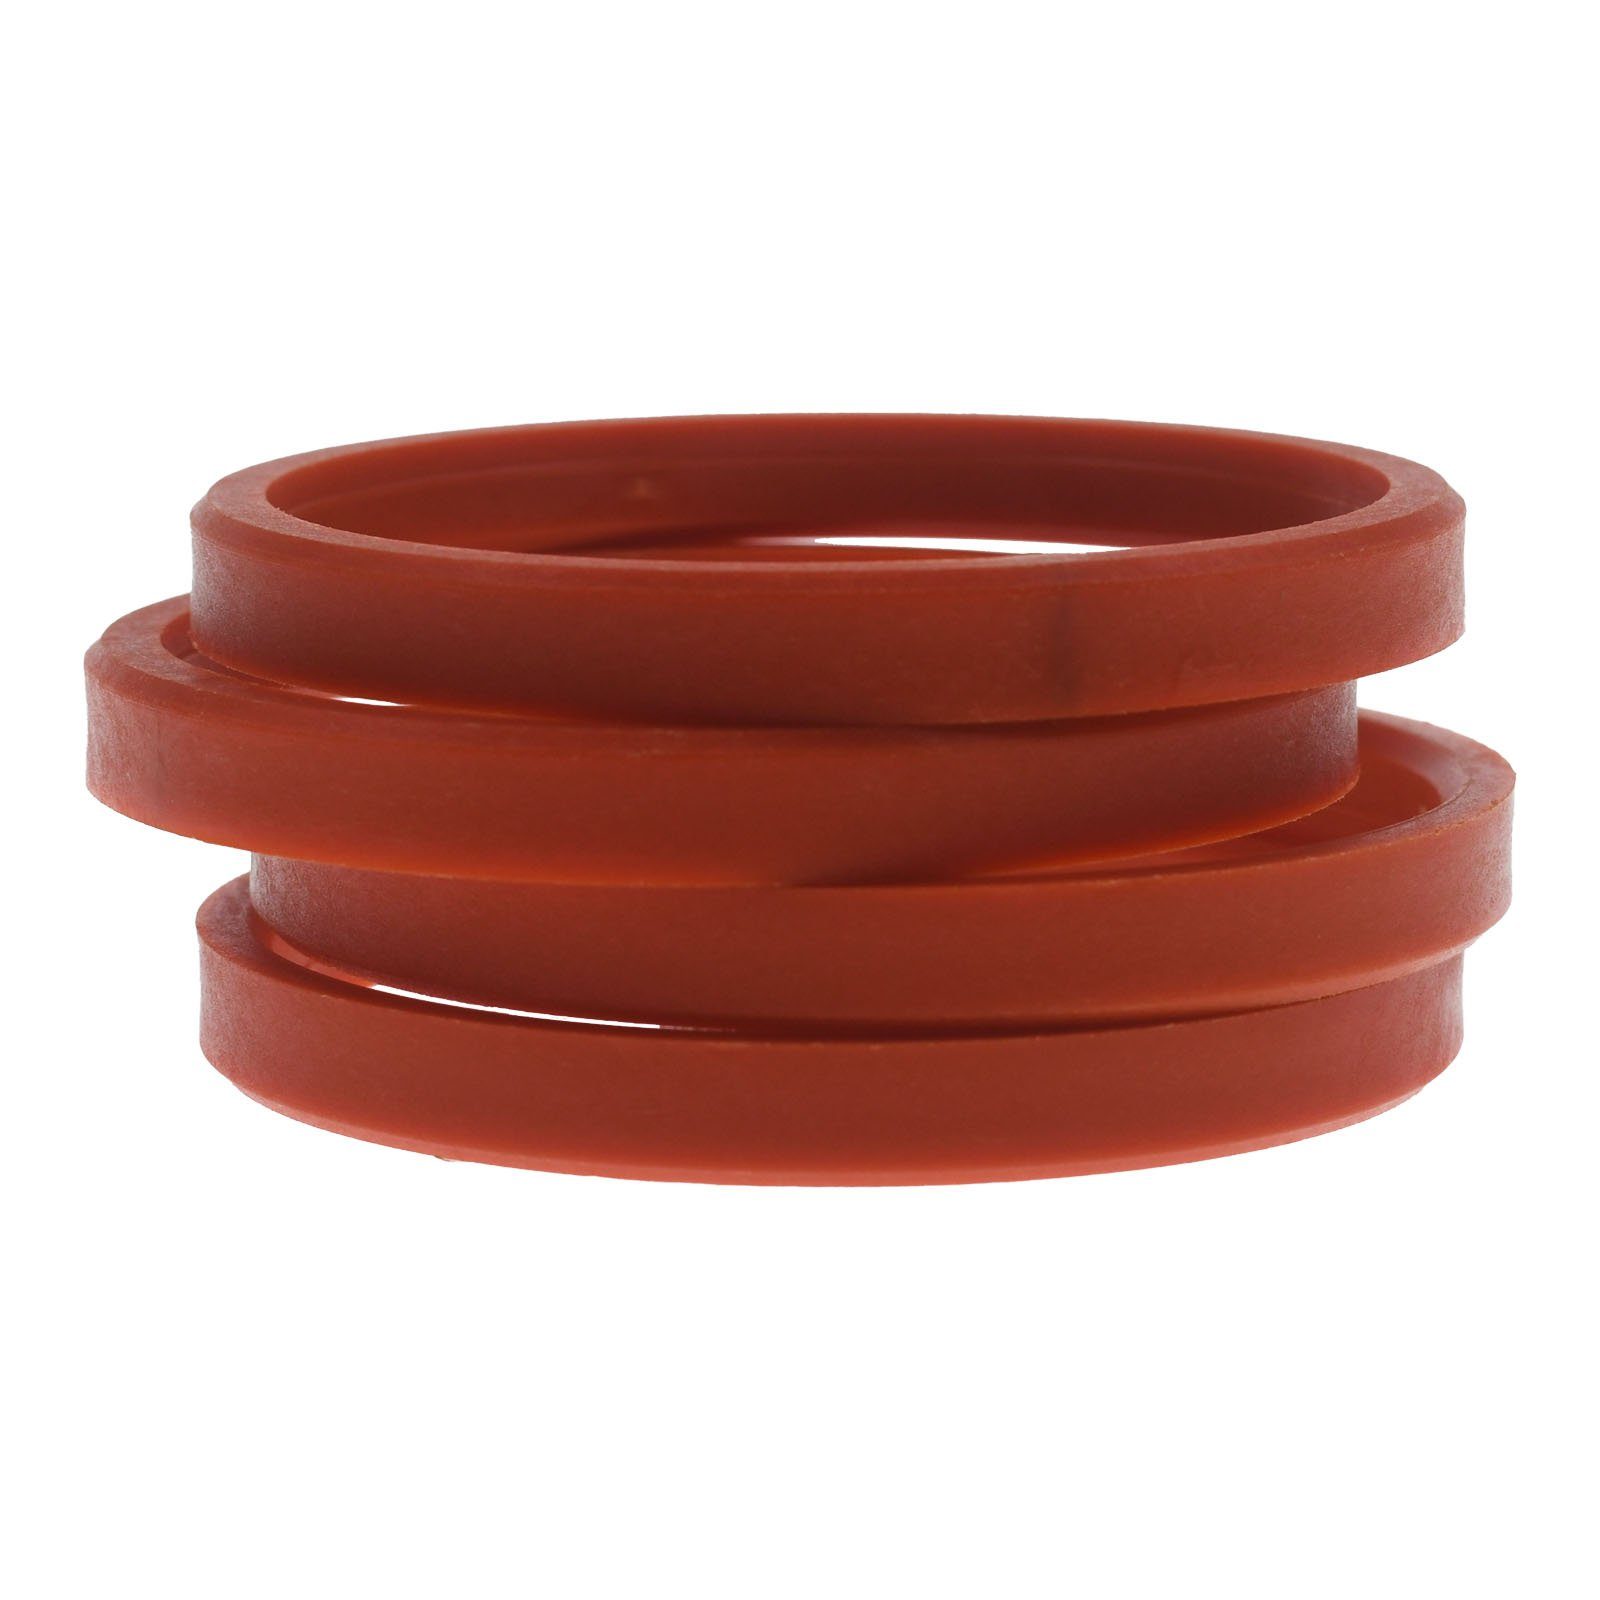 Zentrierringe in Rot Felgen Reifenstift RKC 72,0 Maße: x Made Ringe Germany, 63,4 4x mm